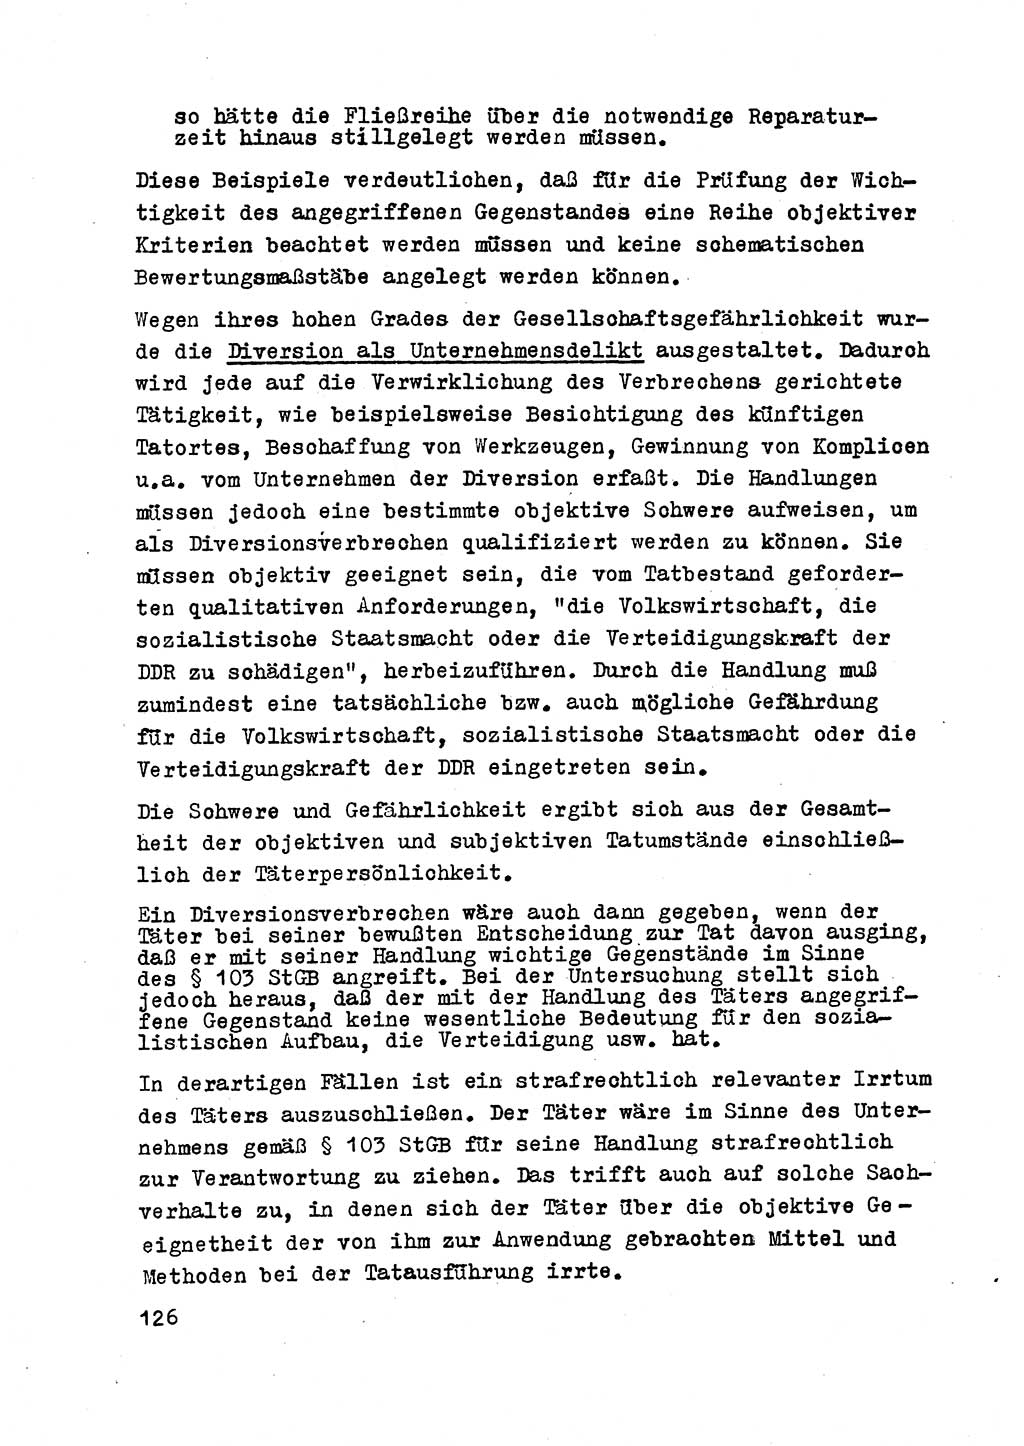 Strafrecht der DDR (Deutsche Demokratische Republik), Besonderer Teil, Lehrmaterial, Heft 2 1969, Seite 126 (Strafr. DDR BT Lehrmat. H. 2 1969, S. 126)